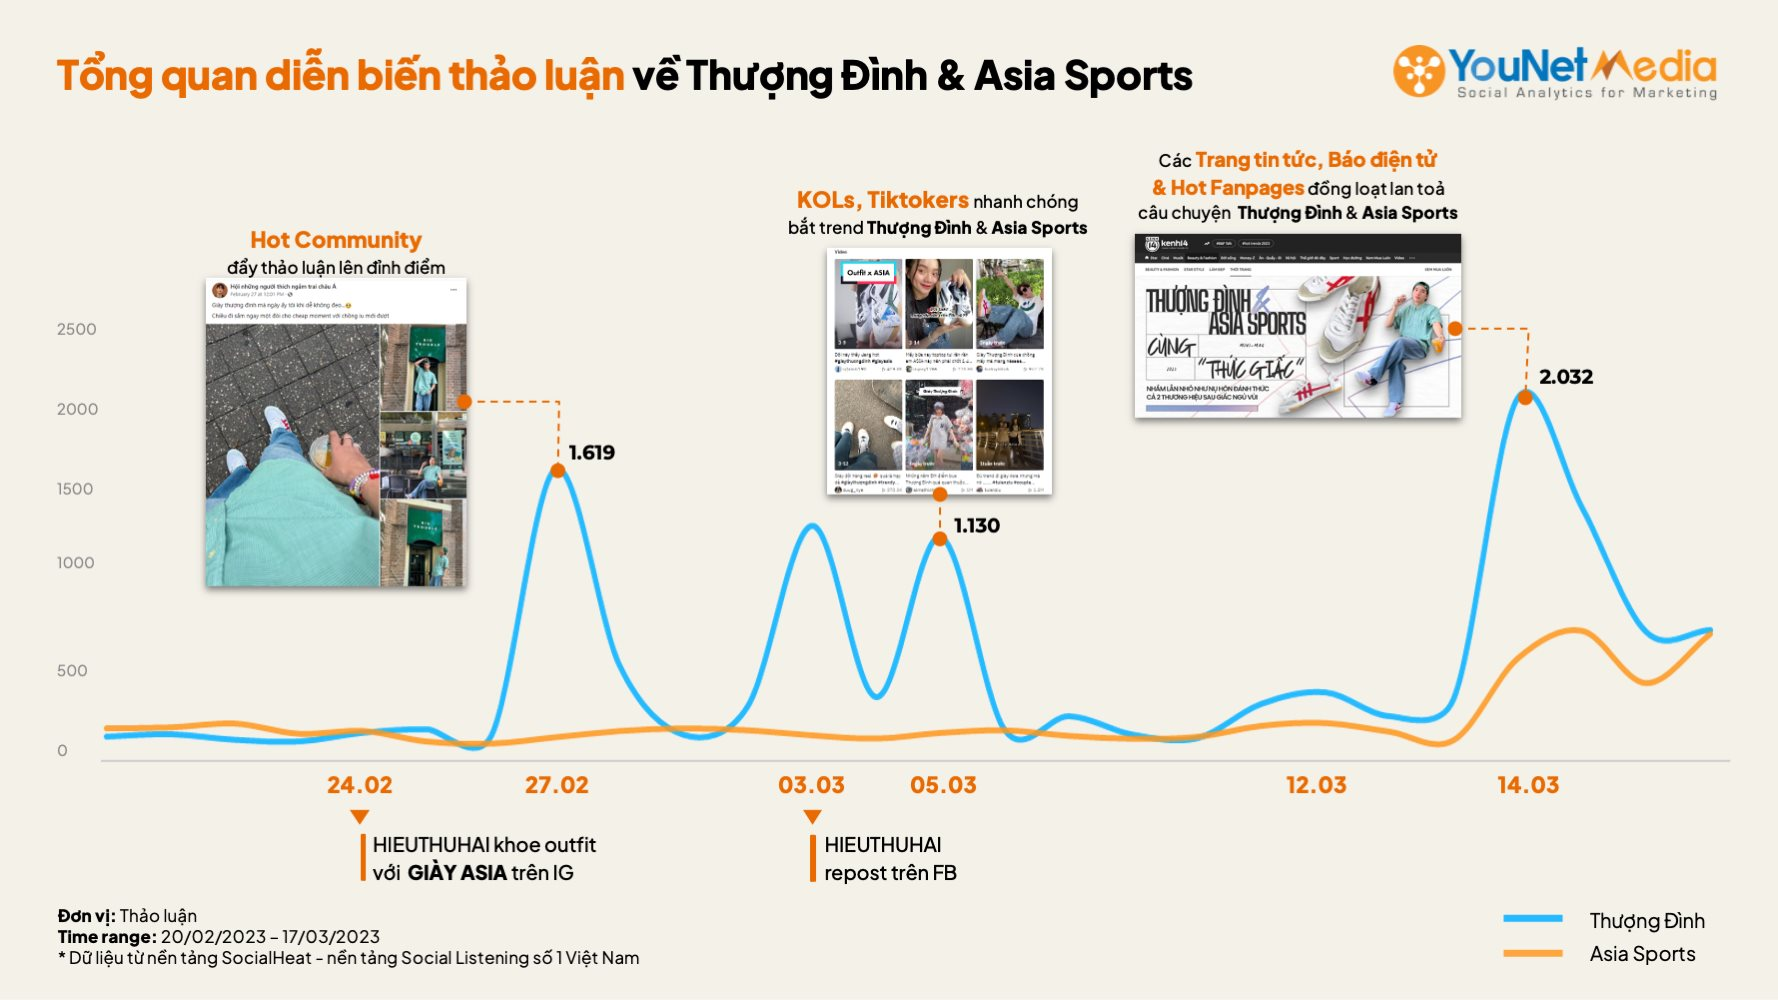 Cái kết từ nhầm lẫn của cộng đồng mạng: Giày Thượng Đình thu về lượng tương tác gấp hơn 4 lần Asia Sports - Ảnh 3.